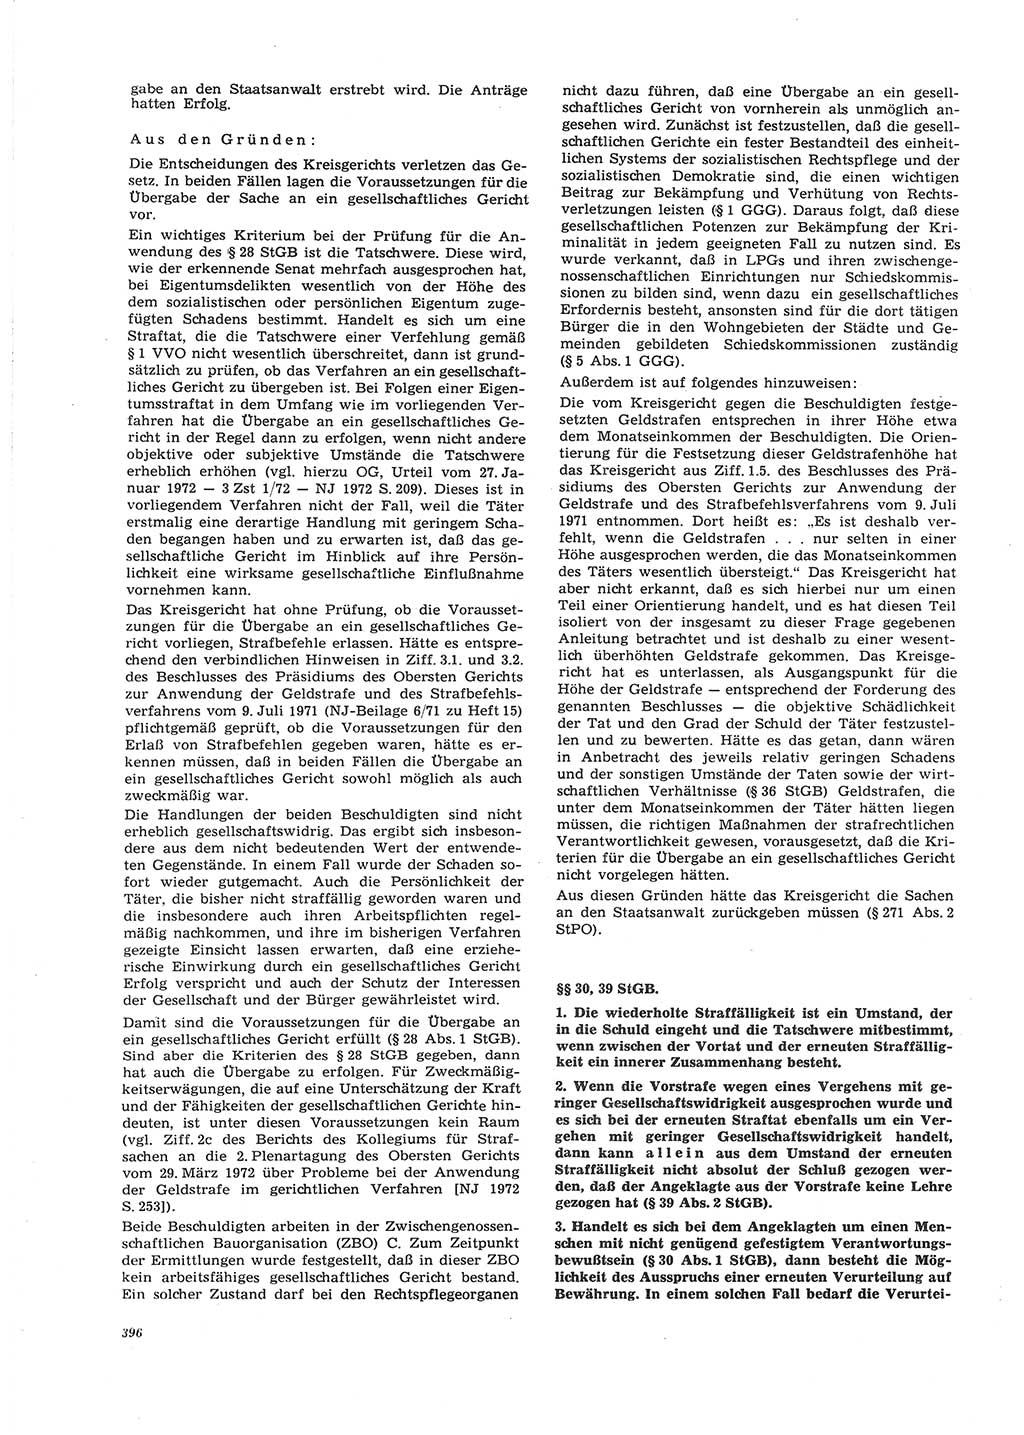 Neue Justiz (NJ), Zeitschrift für Recht und Rechtswissenschaft [Deutsche Demokratische Republik (DDR)], 26. Jahrgang 1972, Seite 396 (NJ DDR 1972, S. 396)